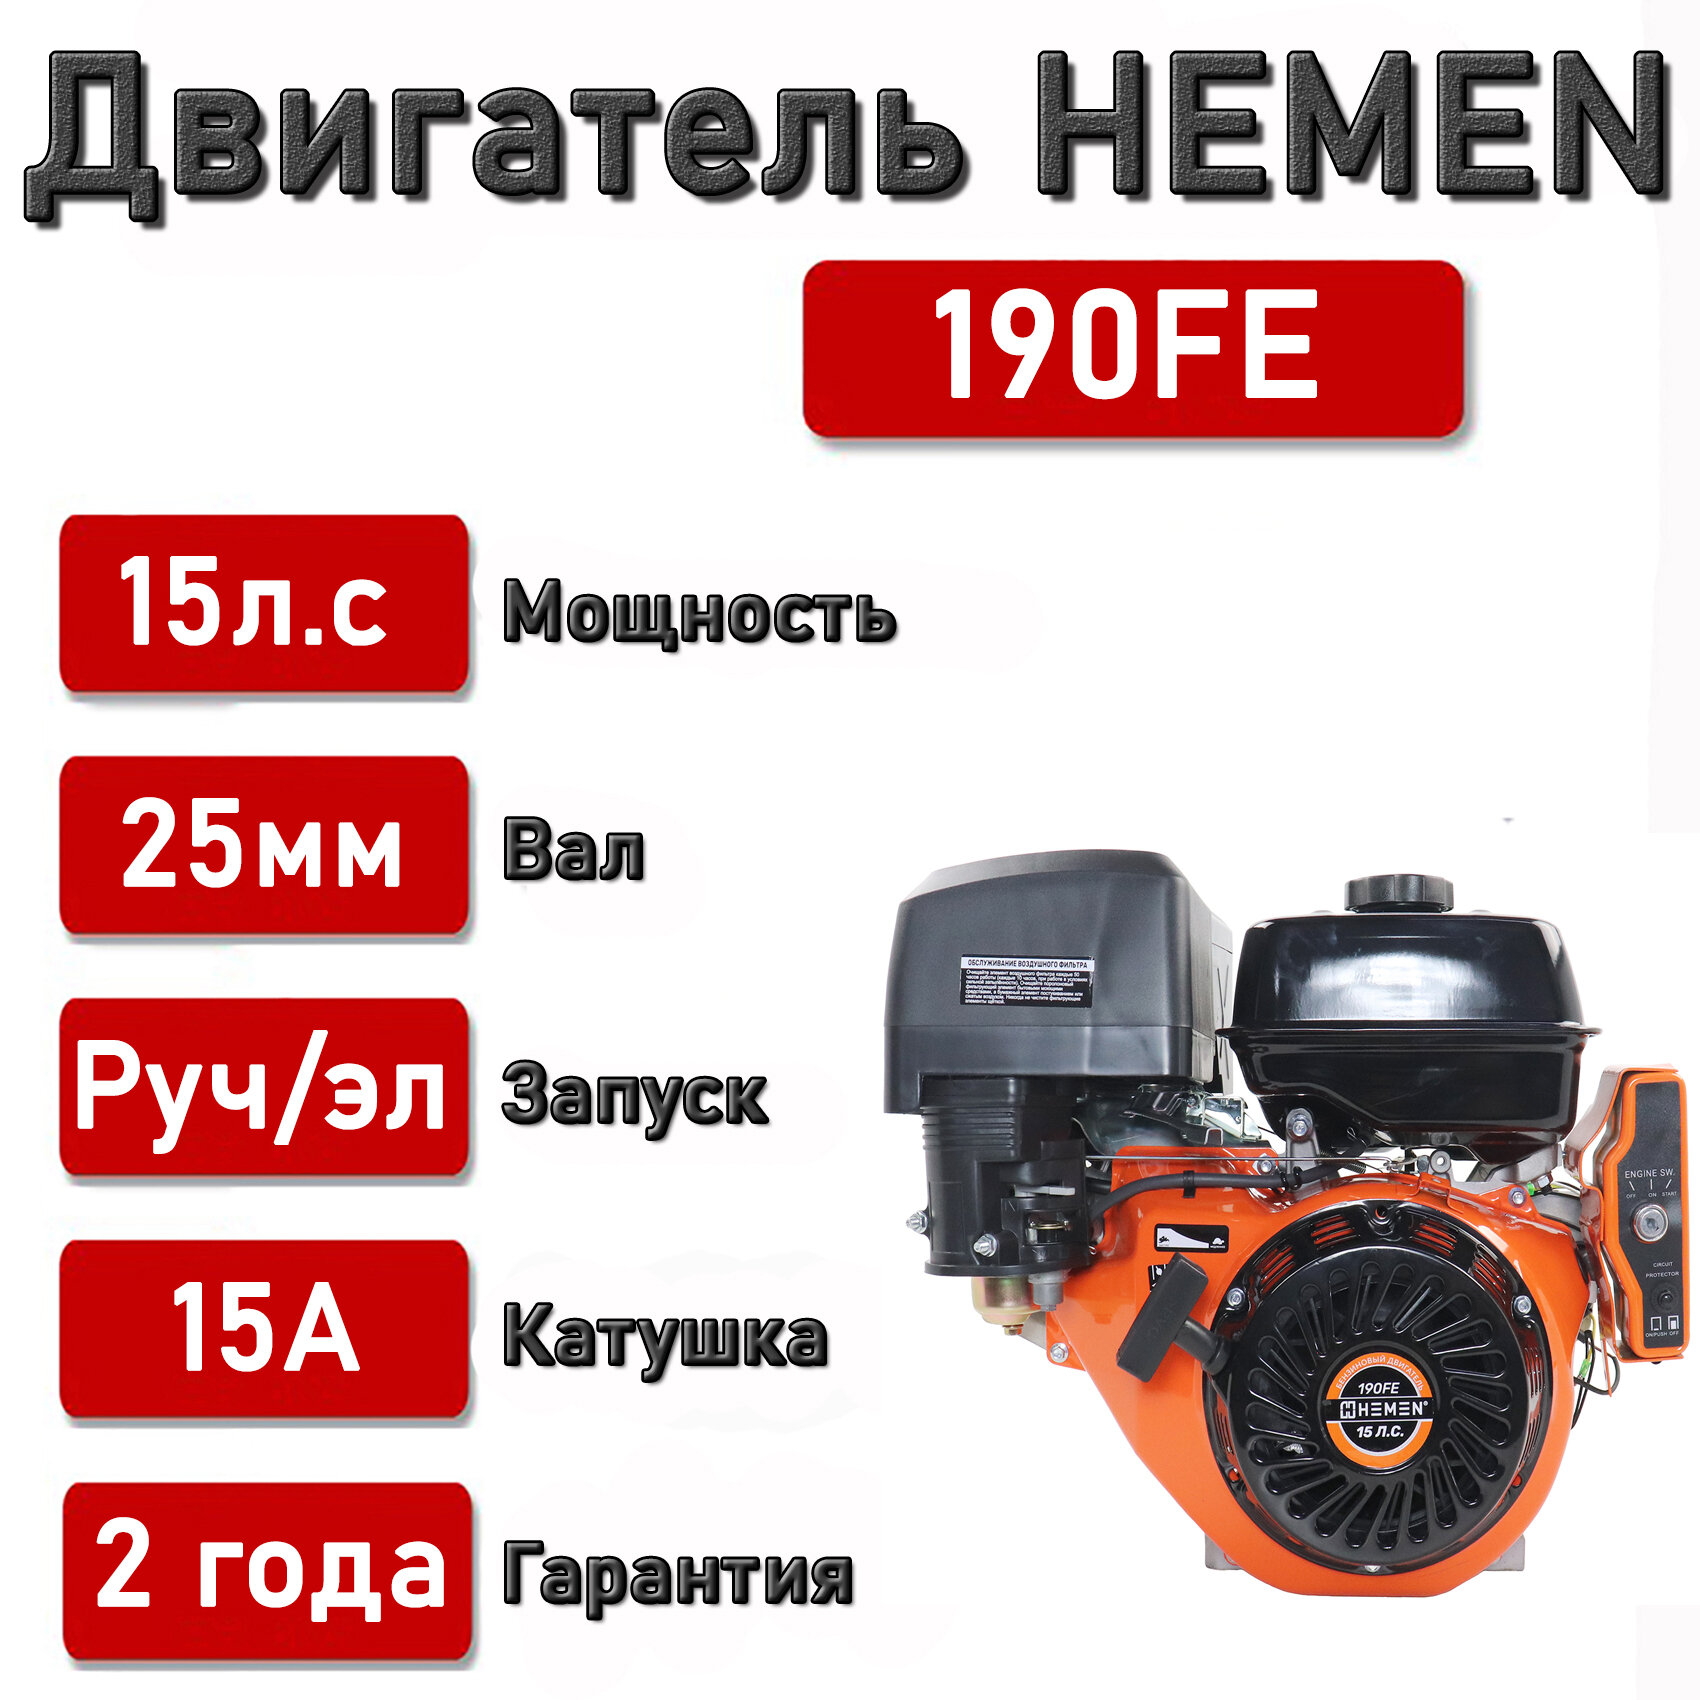 Двигатель HEMEN 15,0 л. с. с катушкой 15А180Вт 190FE (420 см3) электростартер, вал 25 мм